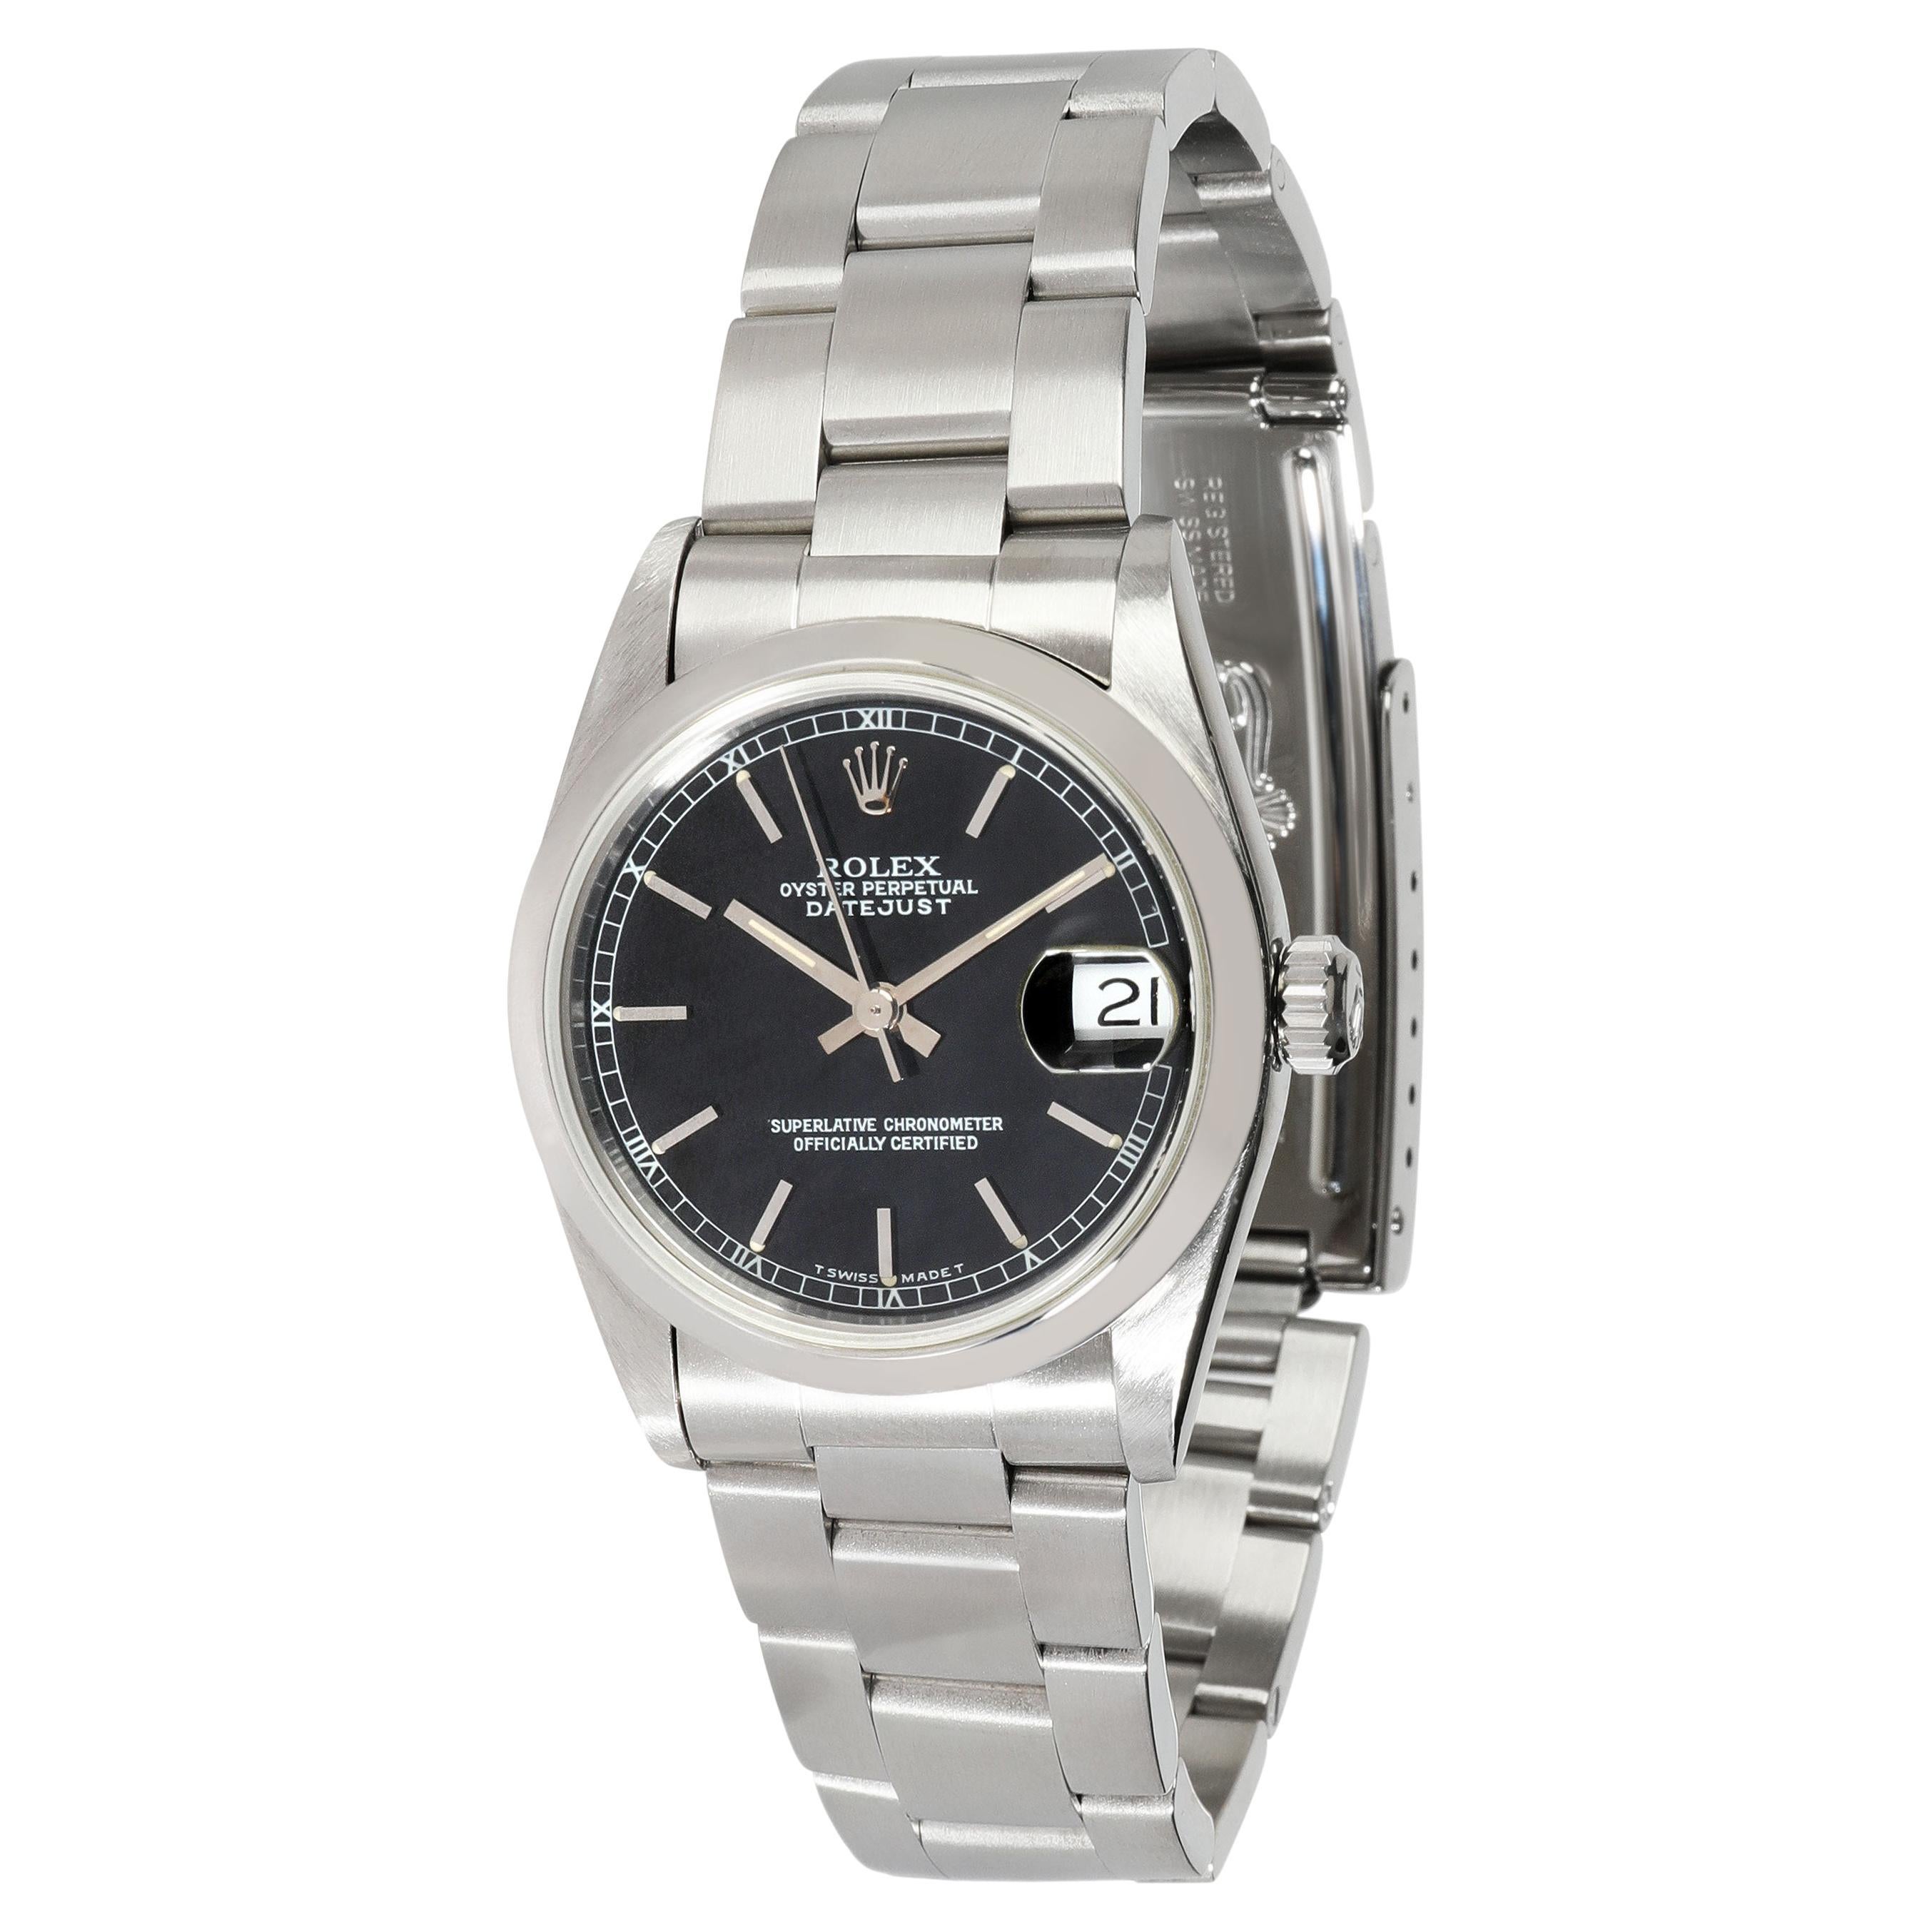 Rolex Datejust 68240 Unisex Watch in Stainless Steel